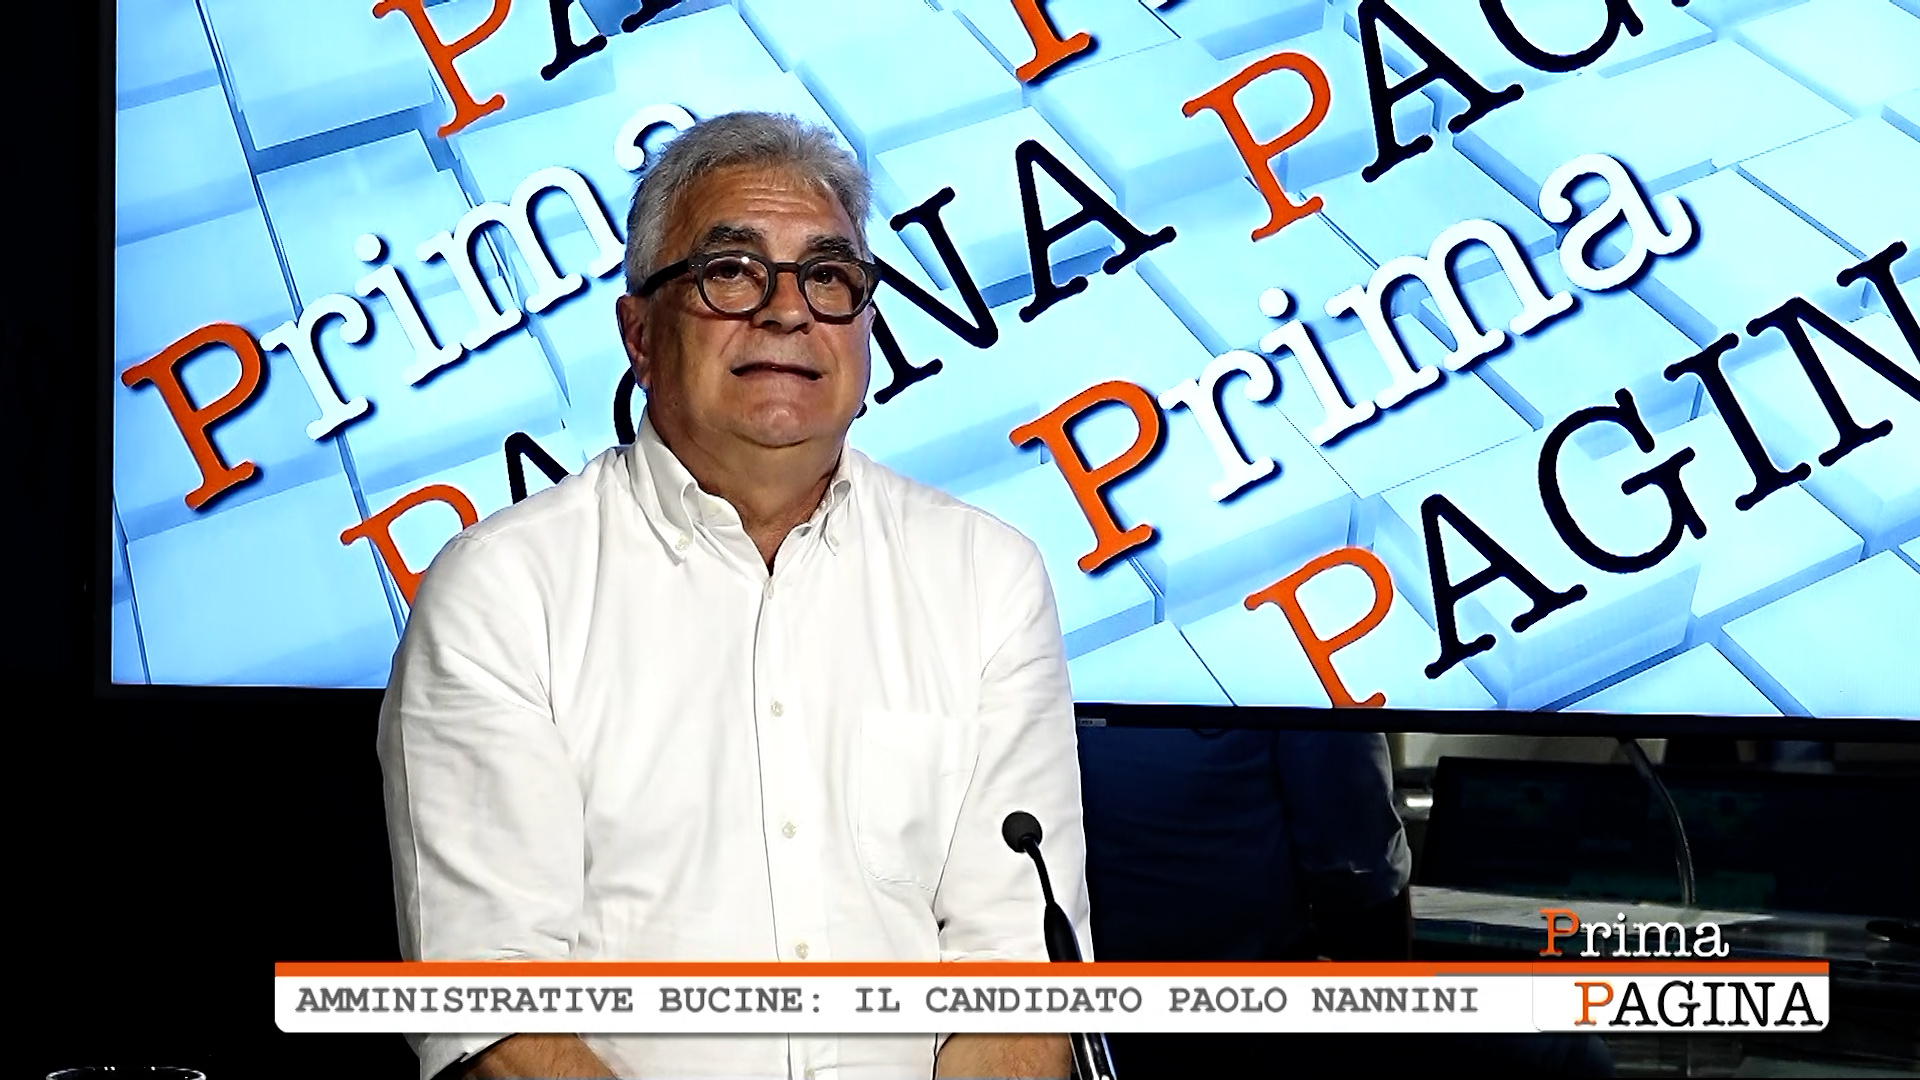 Prima Pagina - Amministrative Bucine: il candidato Paolo Nannini